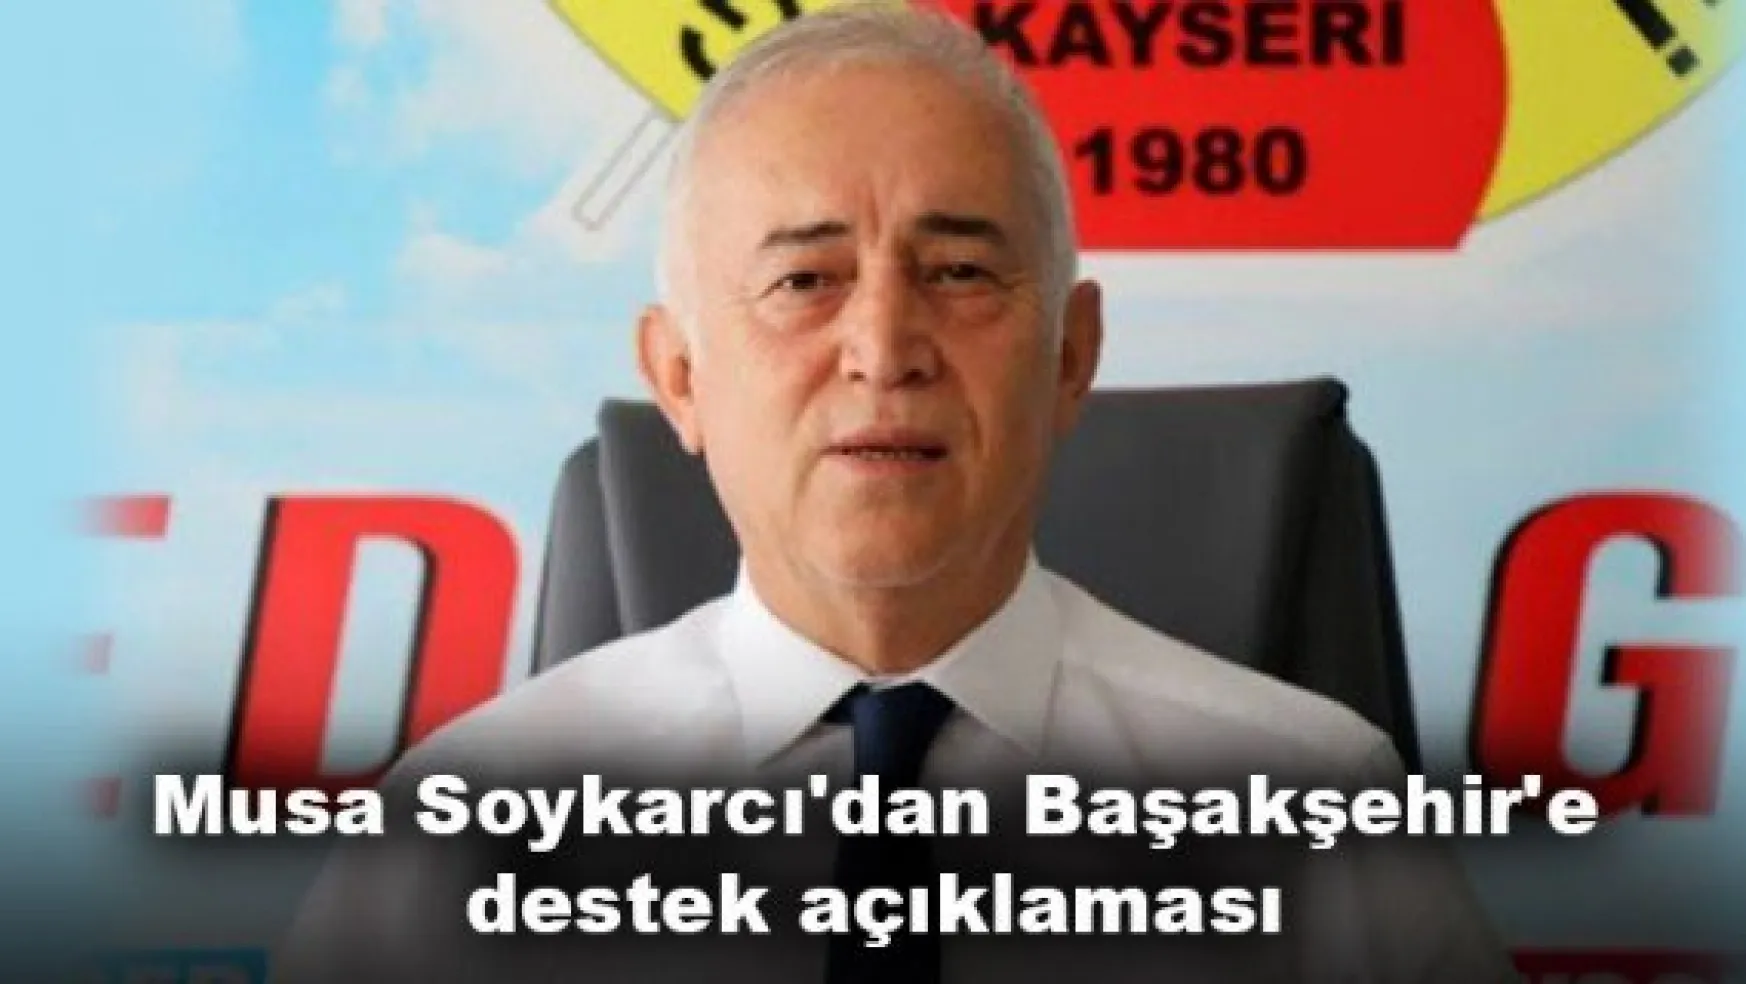 Musa Soykarcı'dan Başakşehir'e destek açıklaması